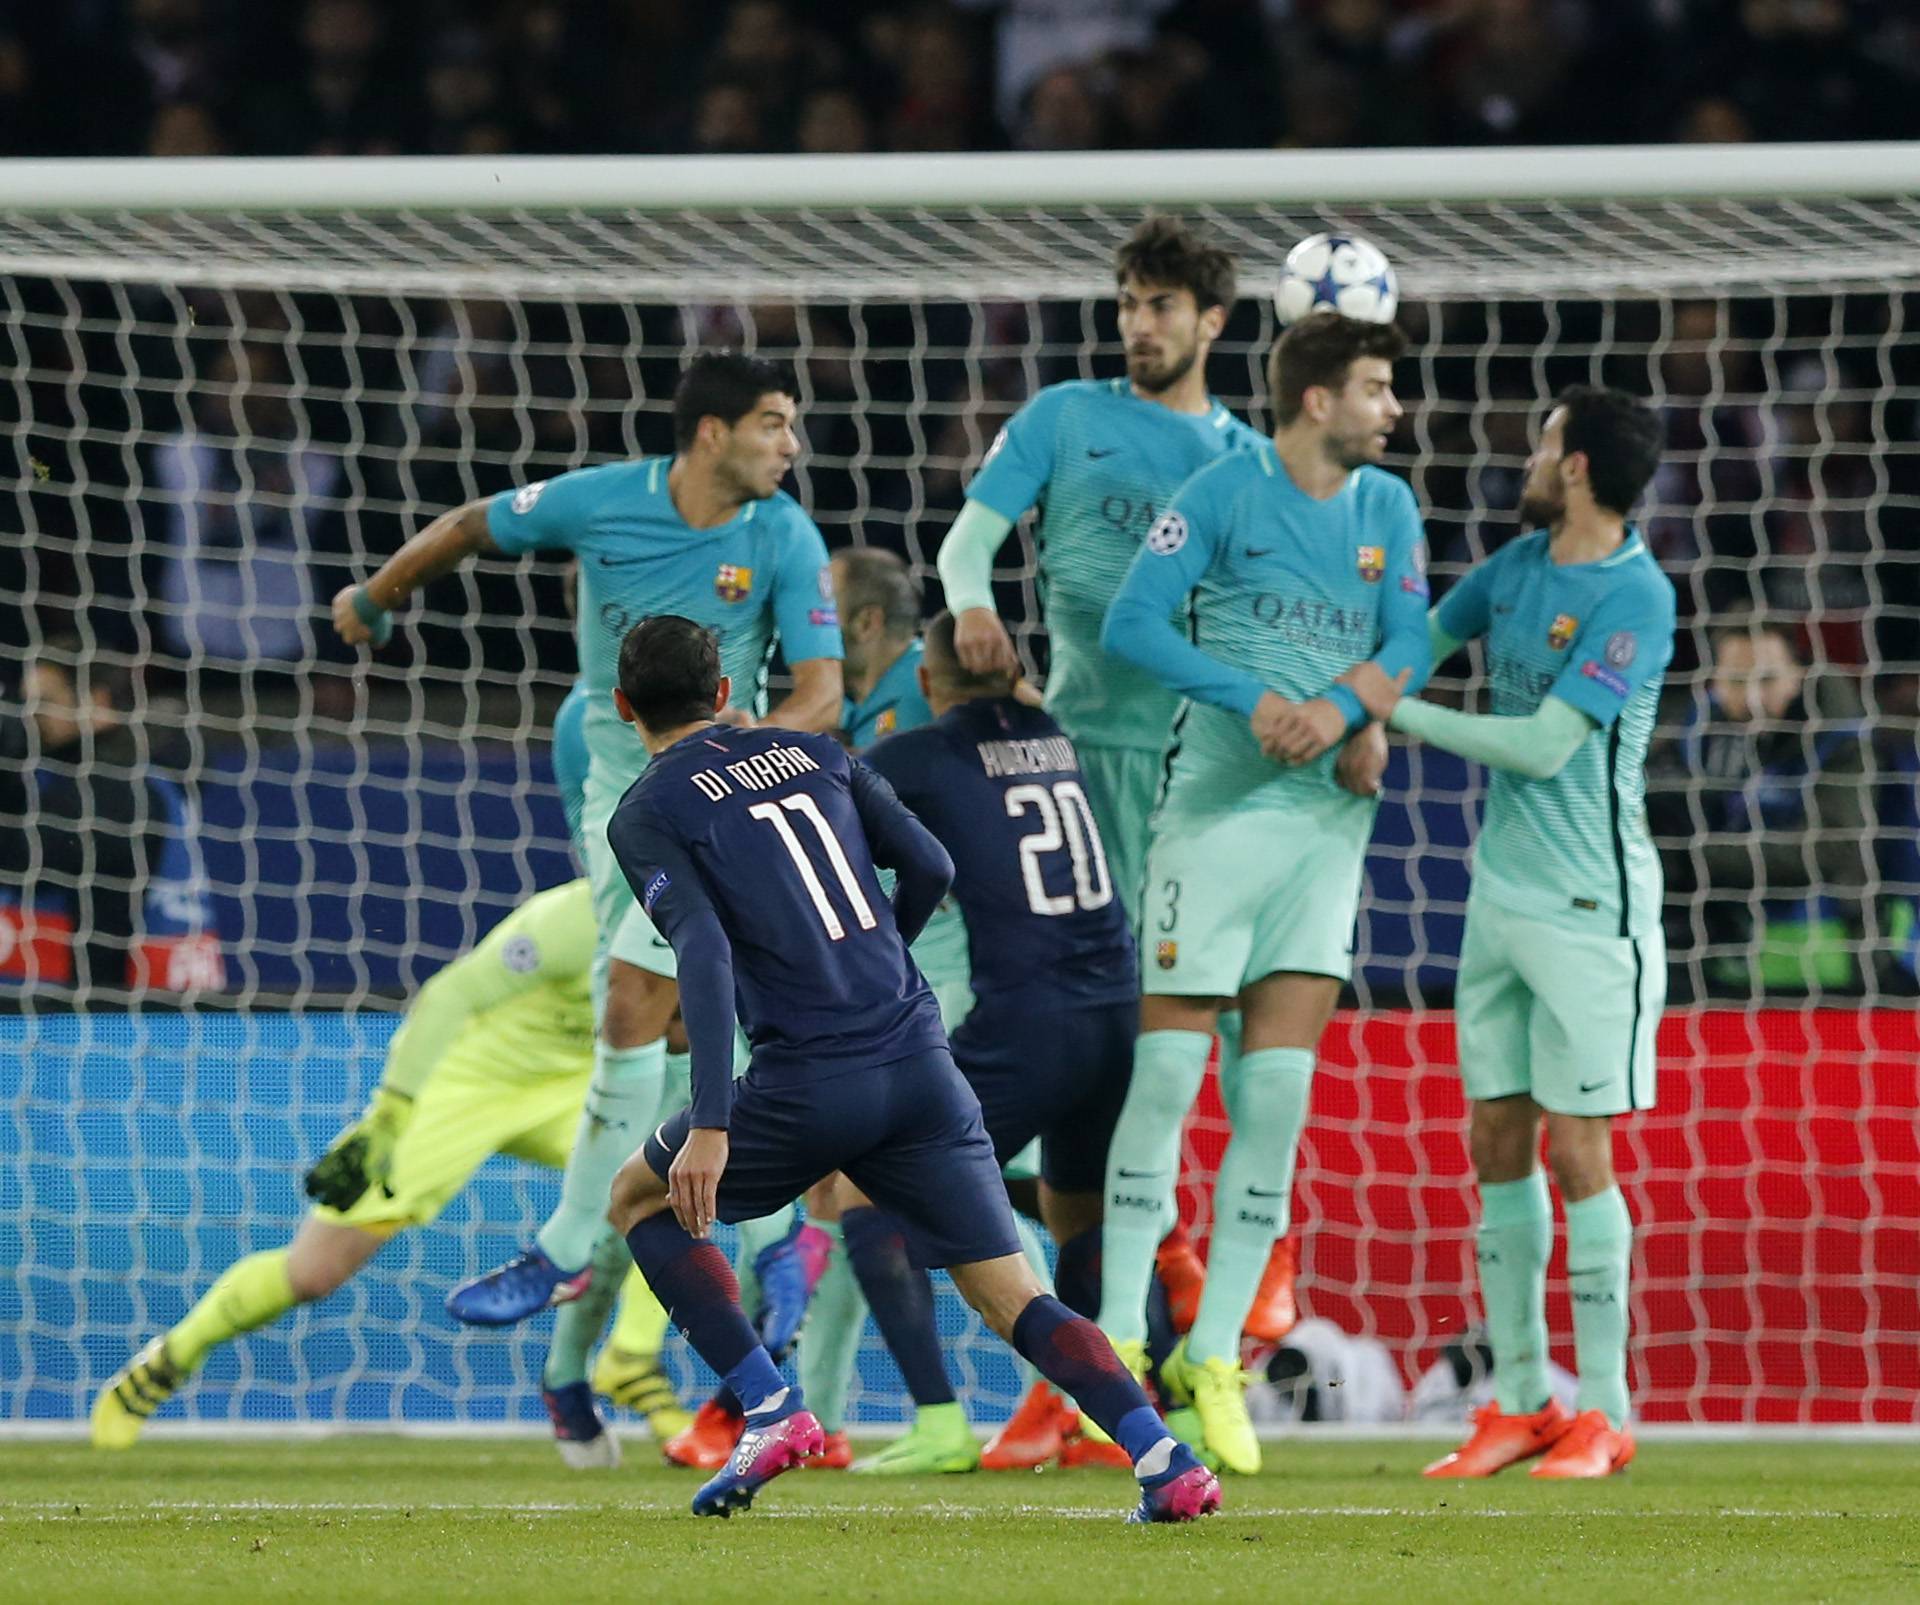 Paris Saint-Germain's Angel Di Maria scores their first goal from a free kick